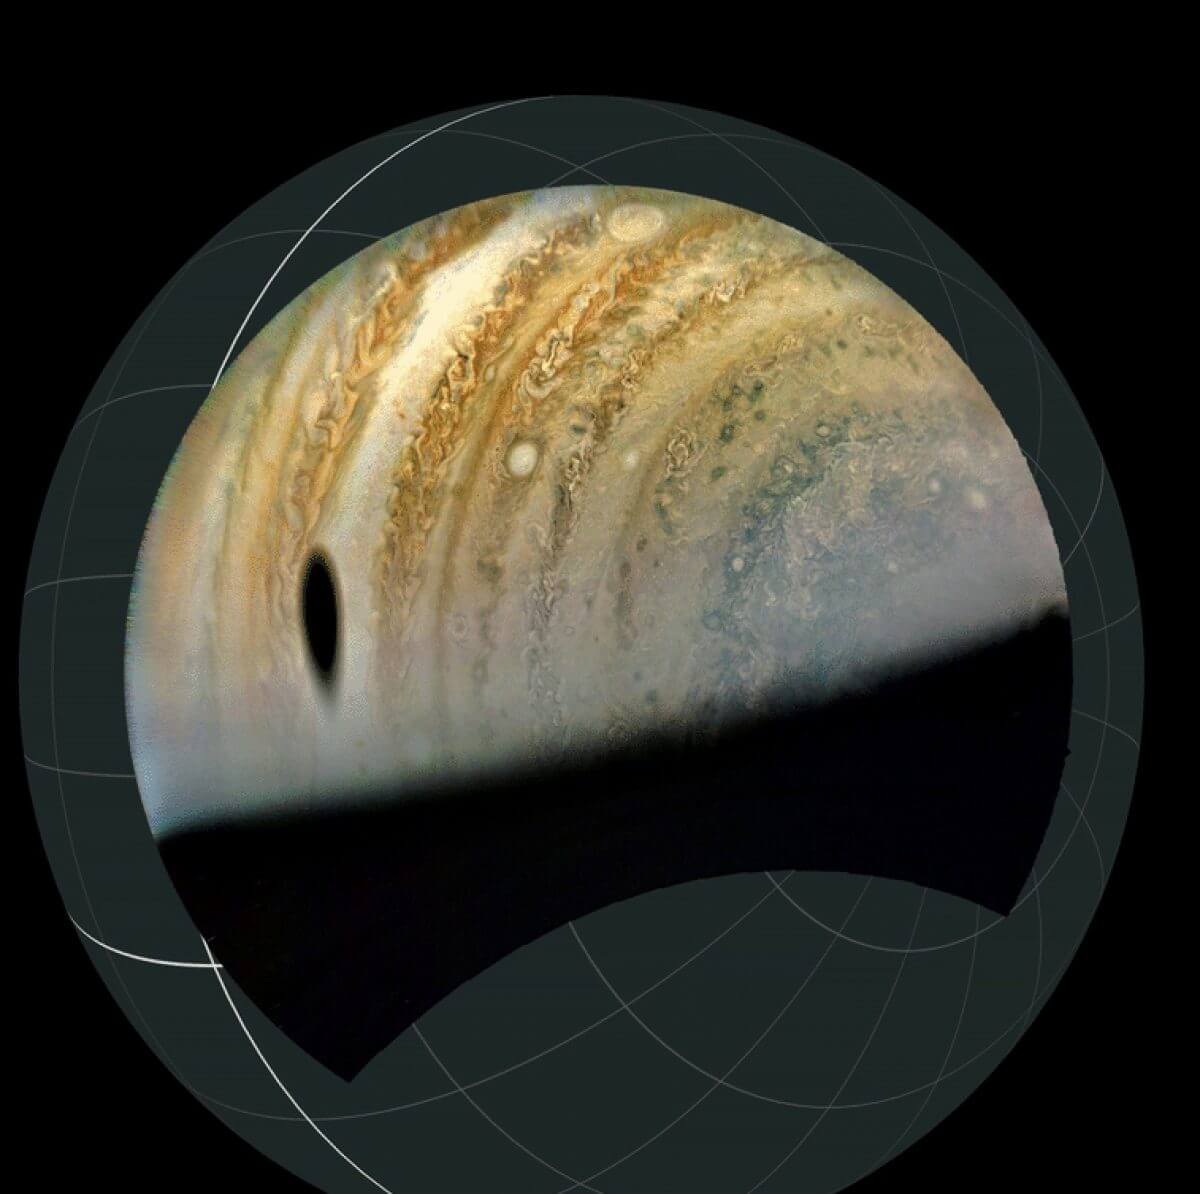 【▲ガニメデの影と木星の大きさがわかる立体画像（Credit: Image data: NASA/JPL-Caltech/SwRI/MSSS, Image processing by Brian Swift）】